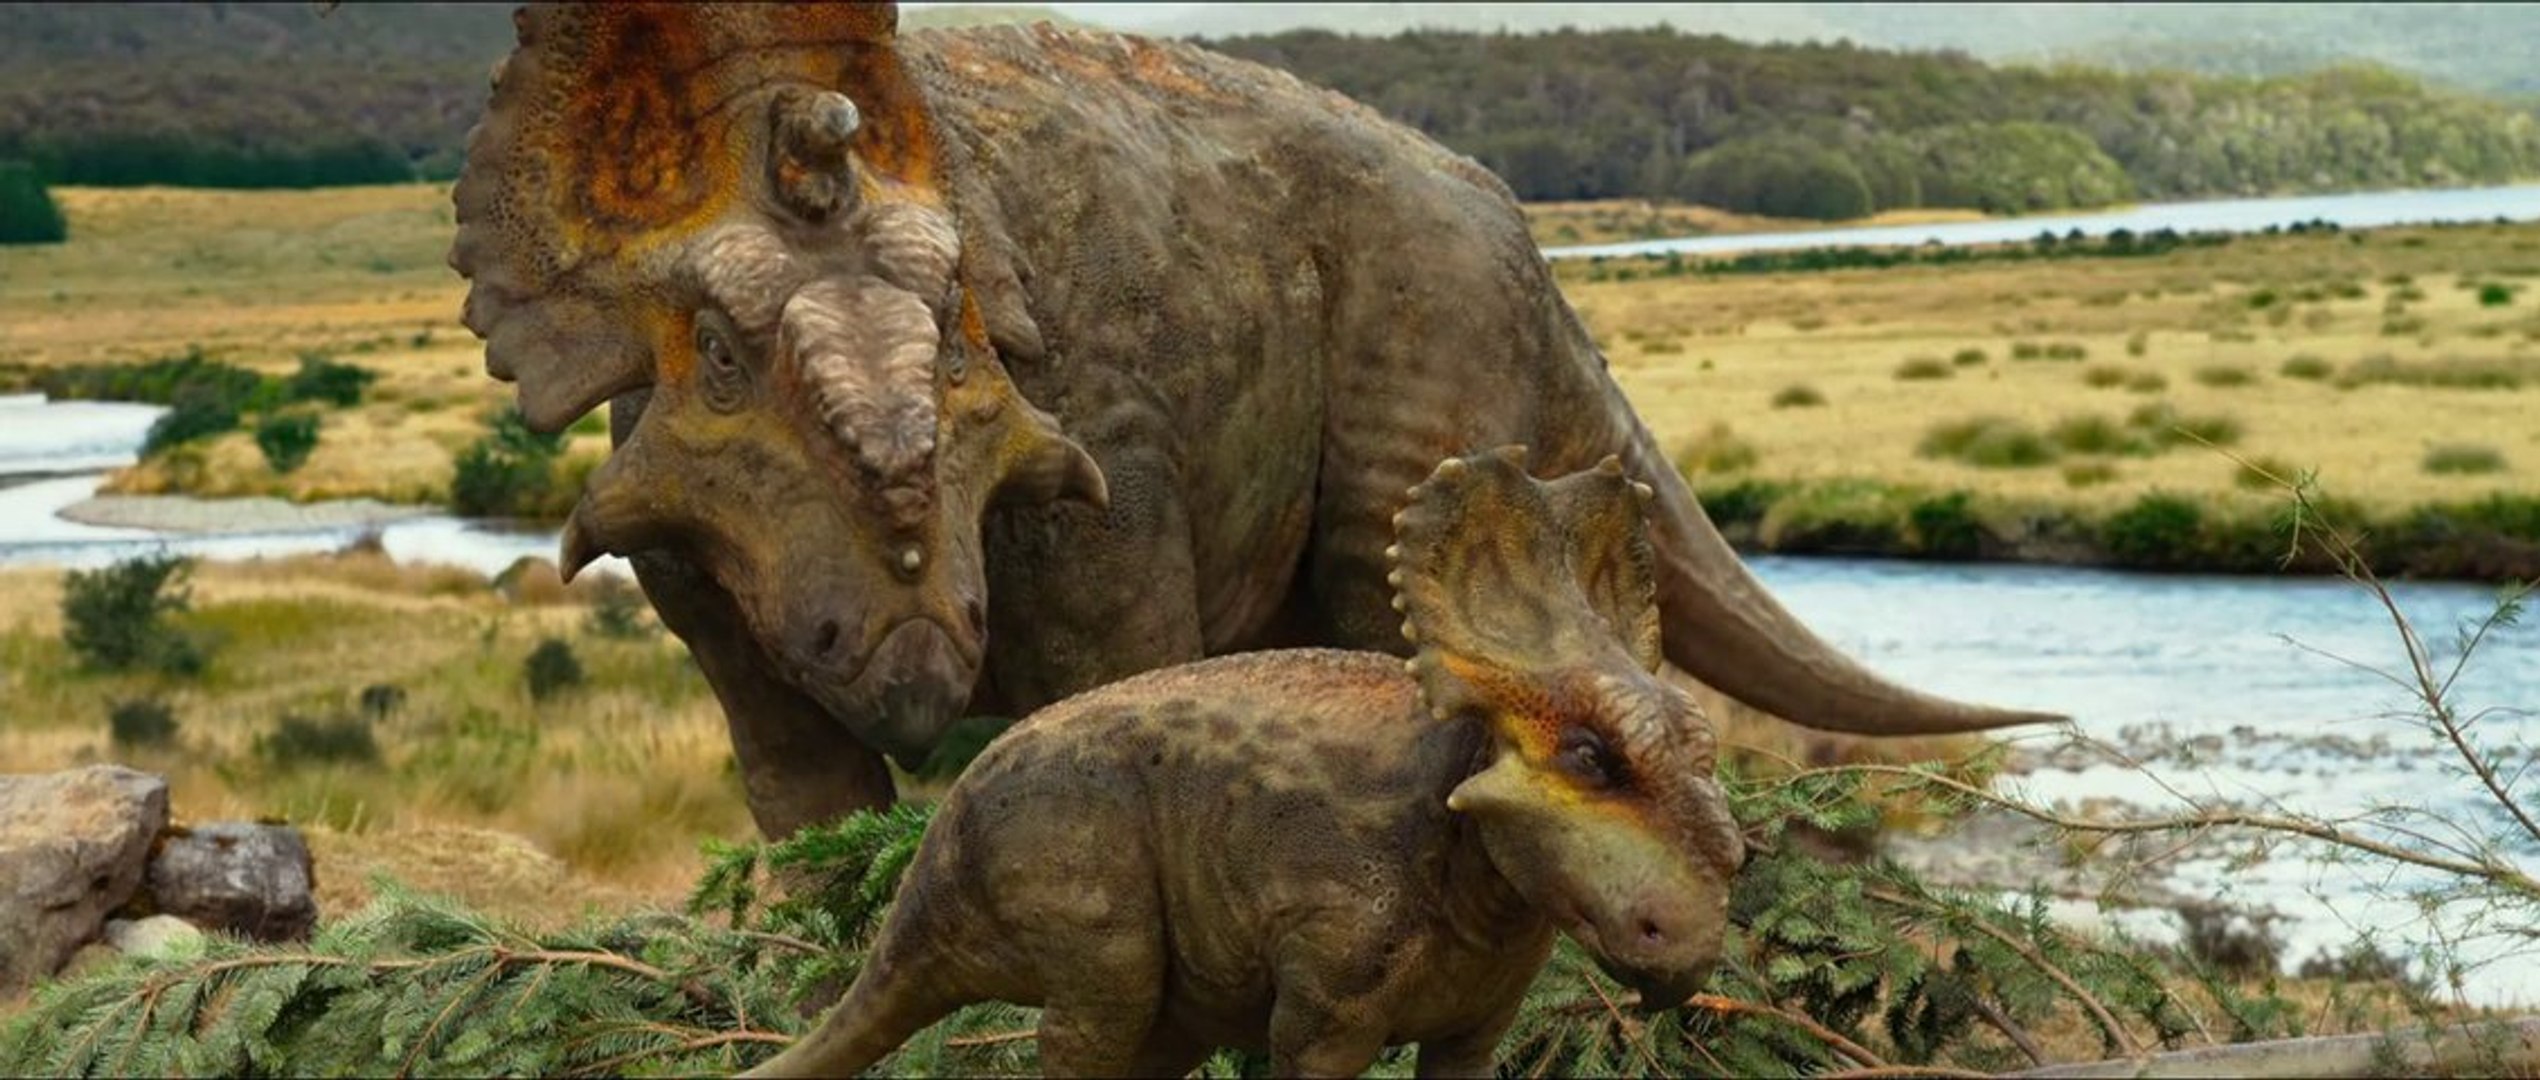 Walking With Dinosaurs -The 3D Movie Περπατώντας με τους Δεινόσαυρους [HD]  Trailer Ελληνικοί Υπότιτλοι - video Dailymotion